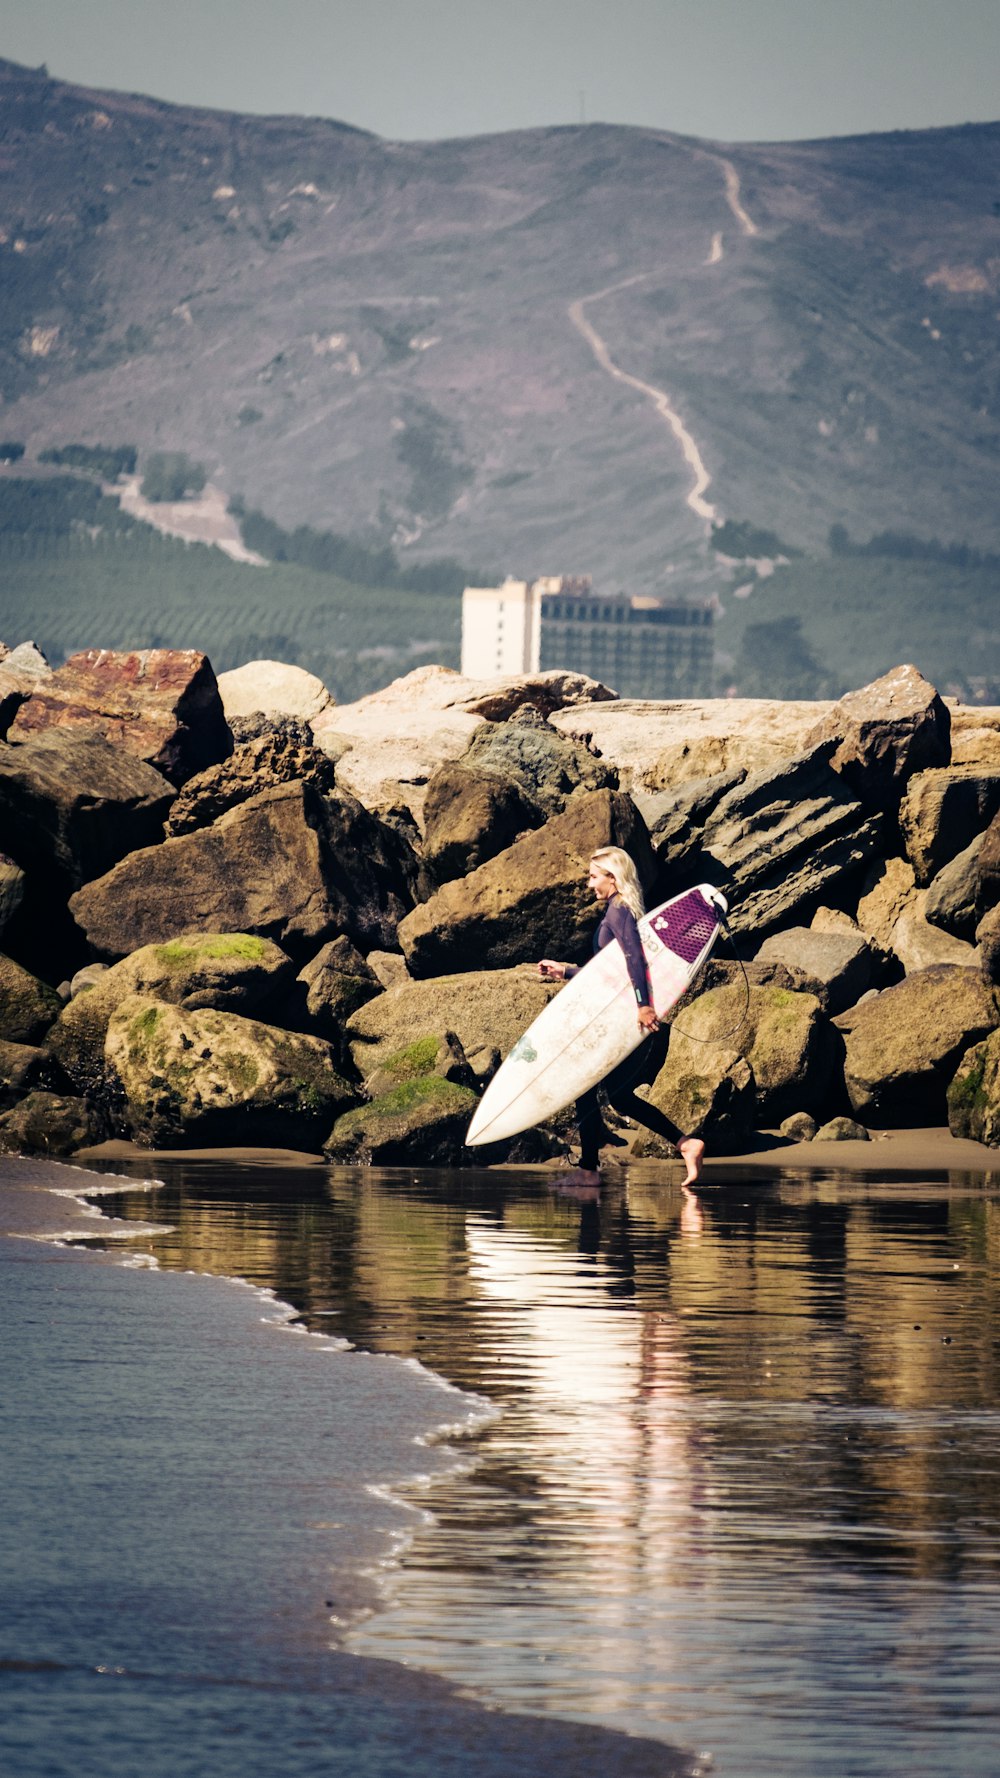 분홍색 긴팔 셔츠와 흰 바지를 입은 여자가 바위 해안에 서 있는 흰색 서핑보드를 들고 있다